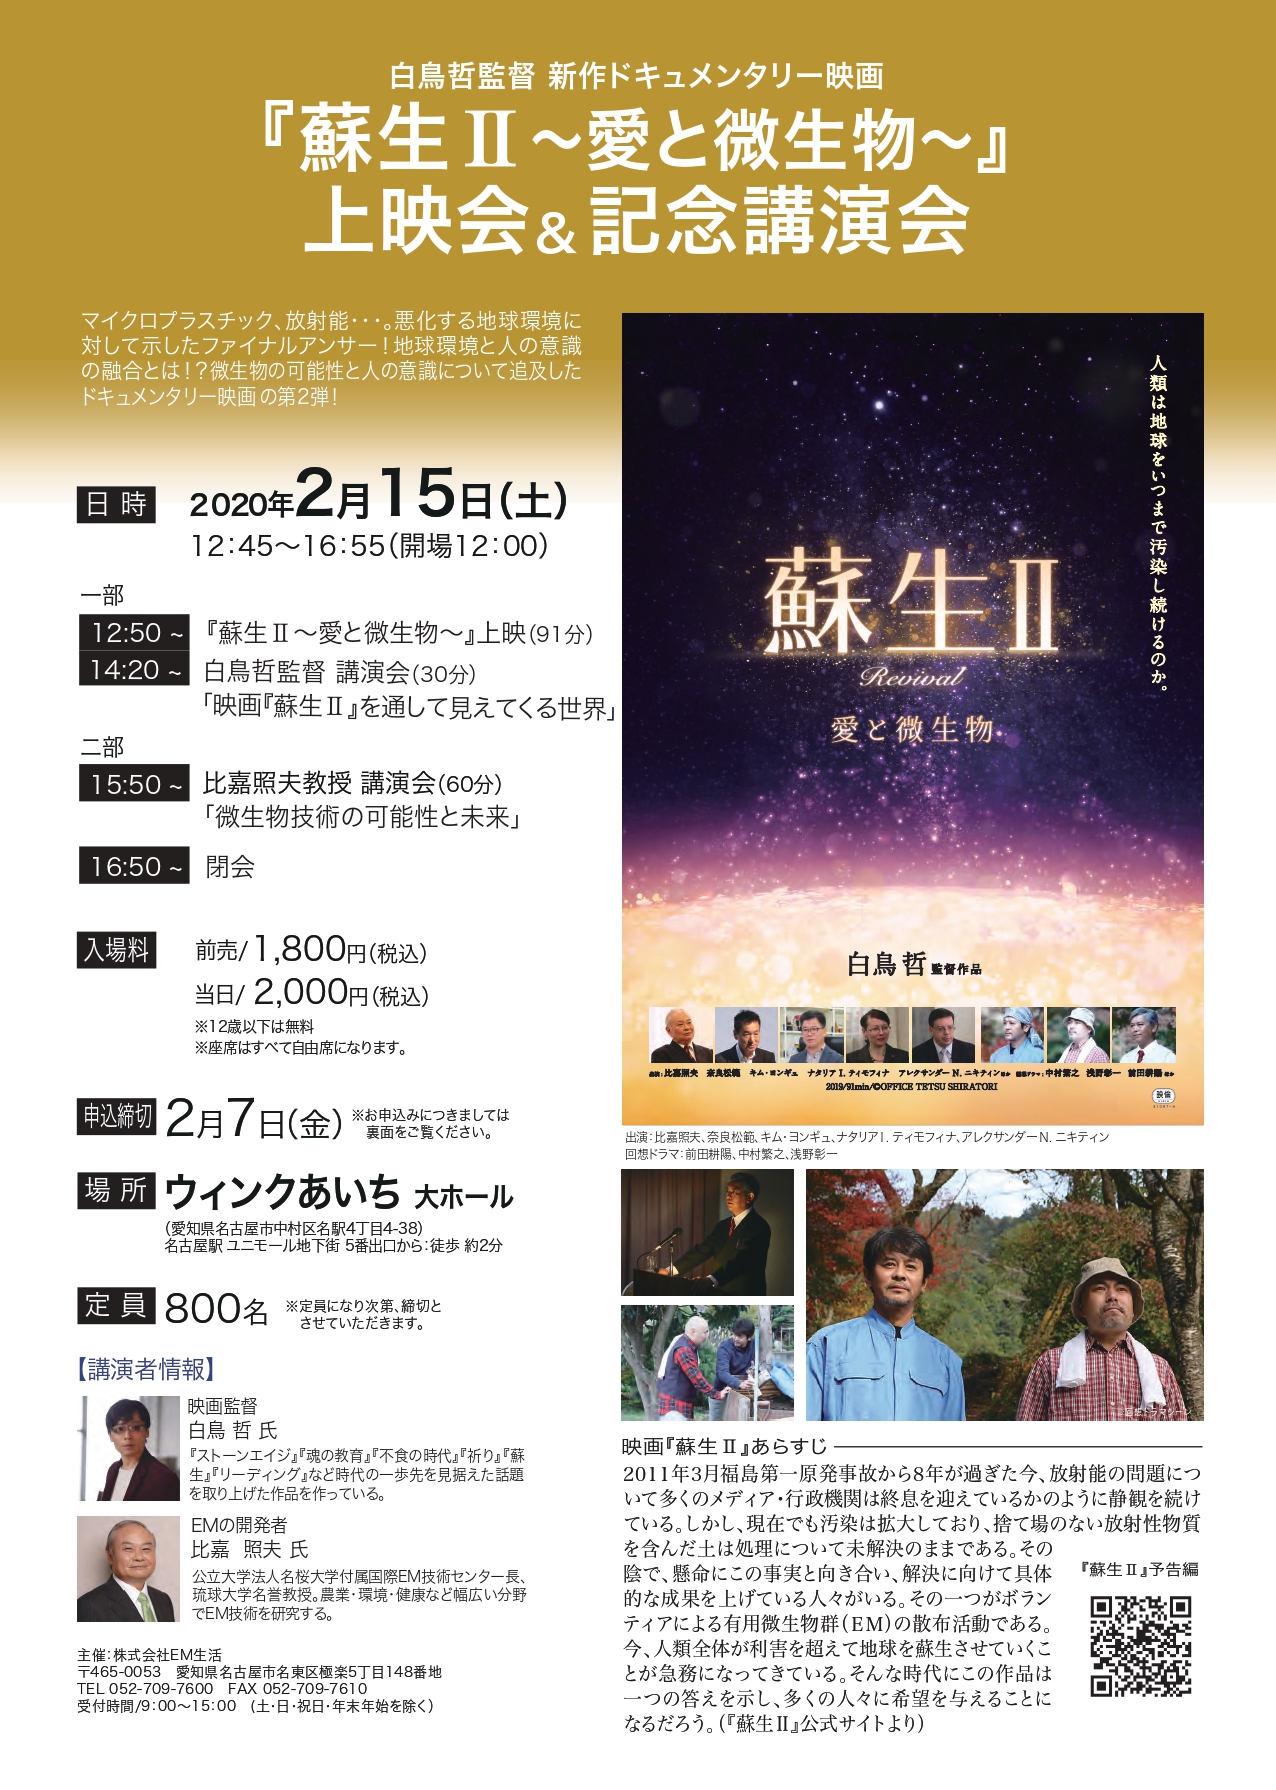 2/15　映画「蘇生Ⅱ」上映イベント開催（名古屋）